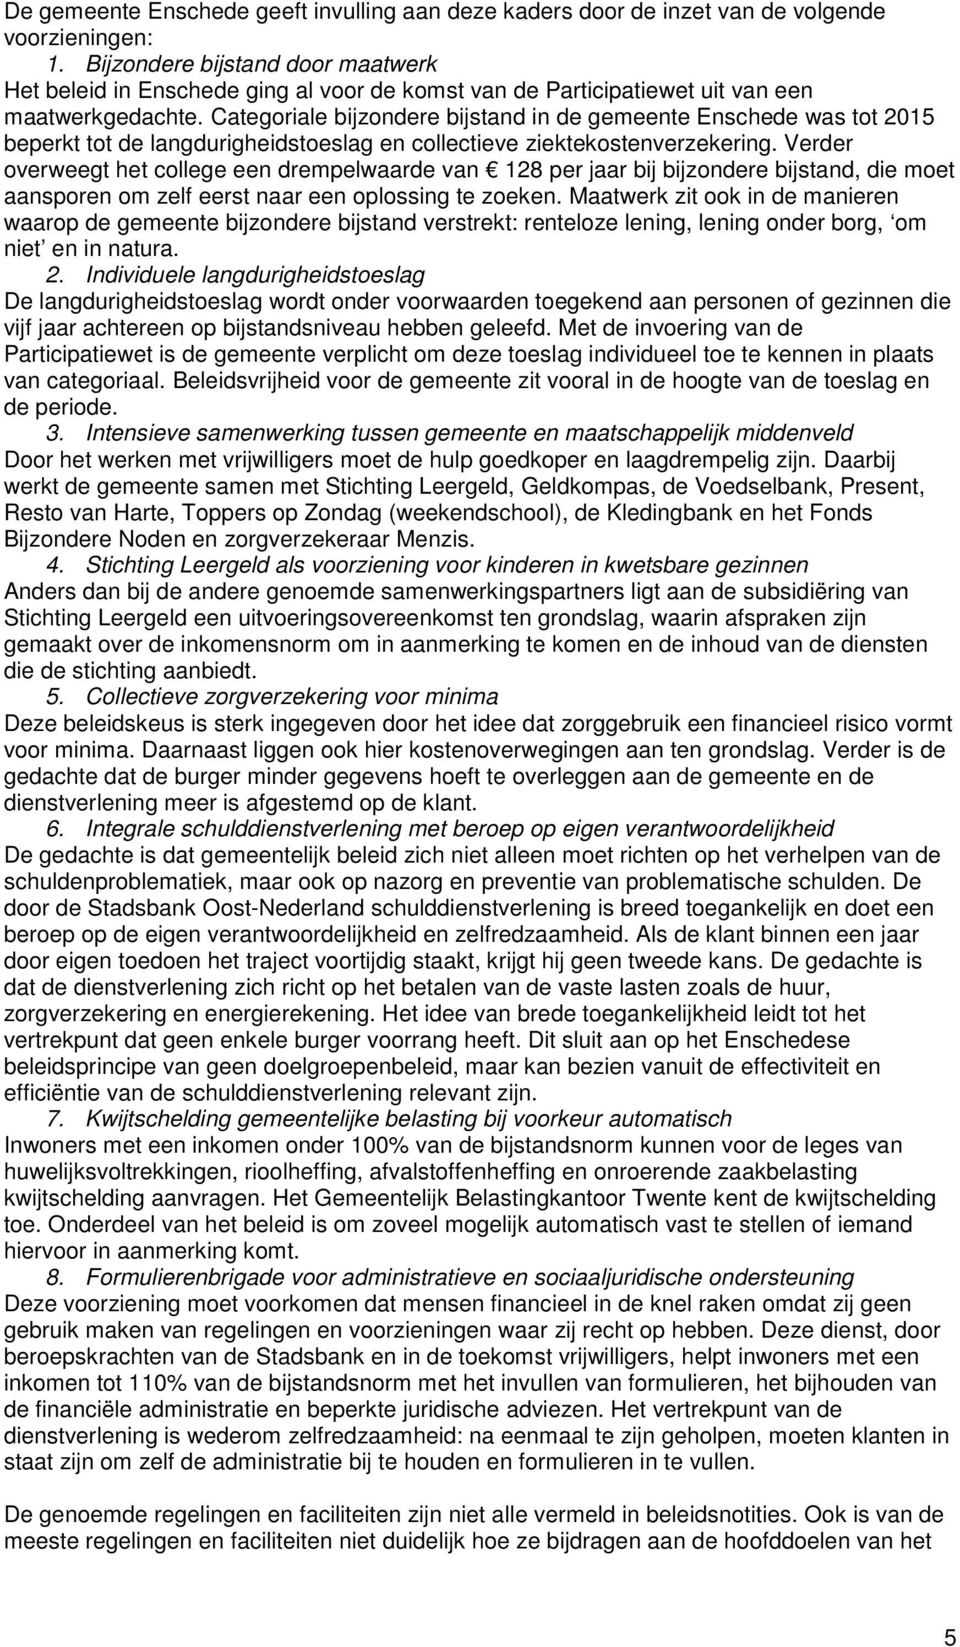 Categoriale bijzondere bijstand in de gemeente Enschede was tot 2015 beperkt tot de langdurigheidstoeslag en collectieve ziektekostenverzekering.